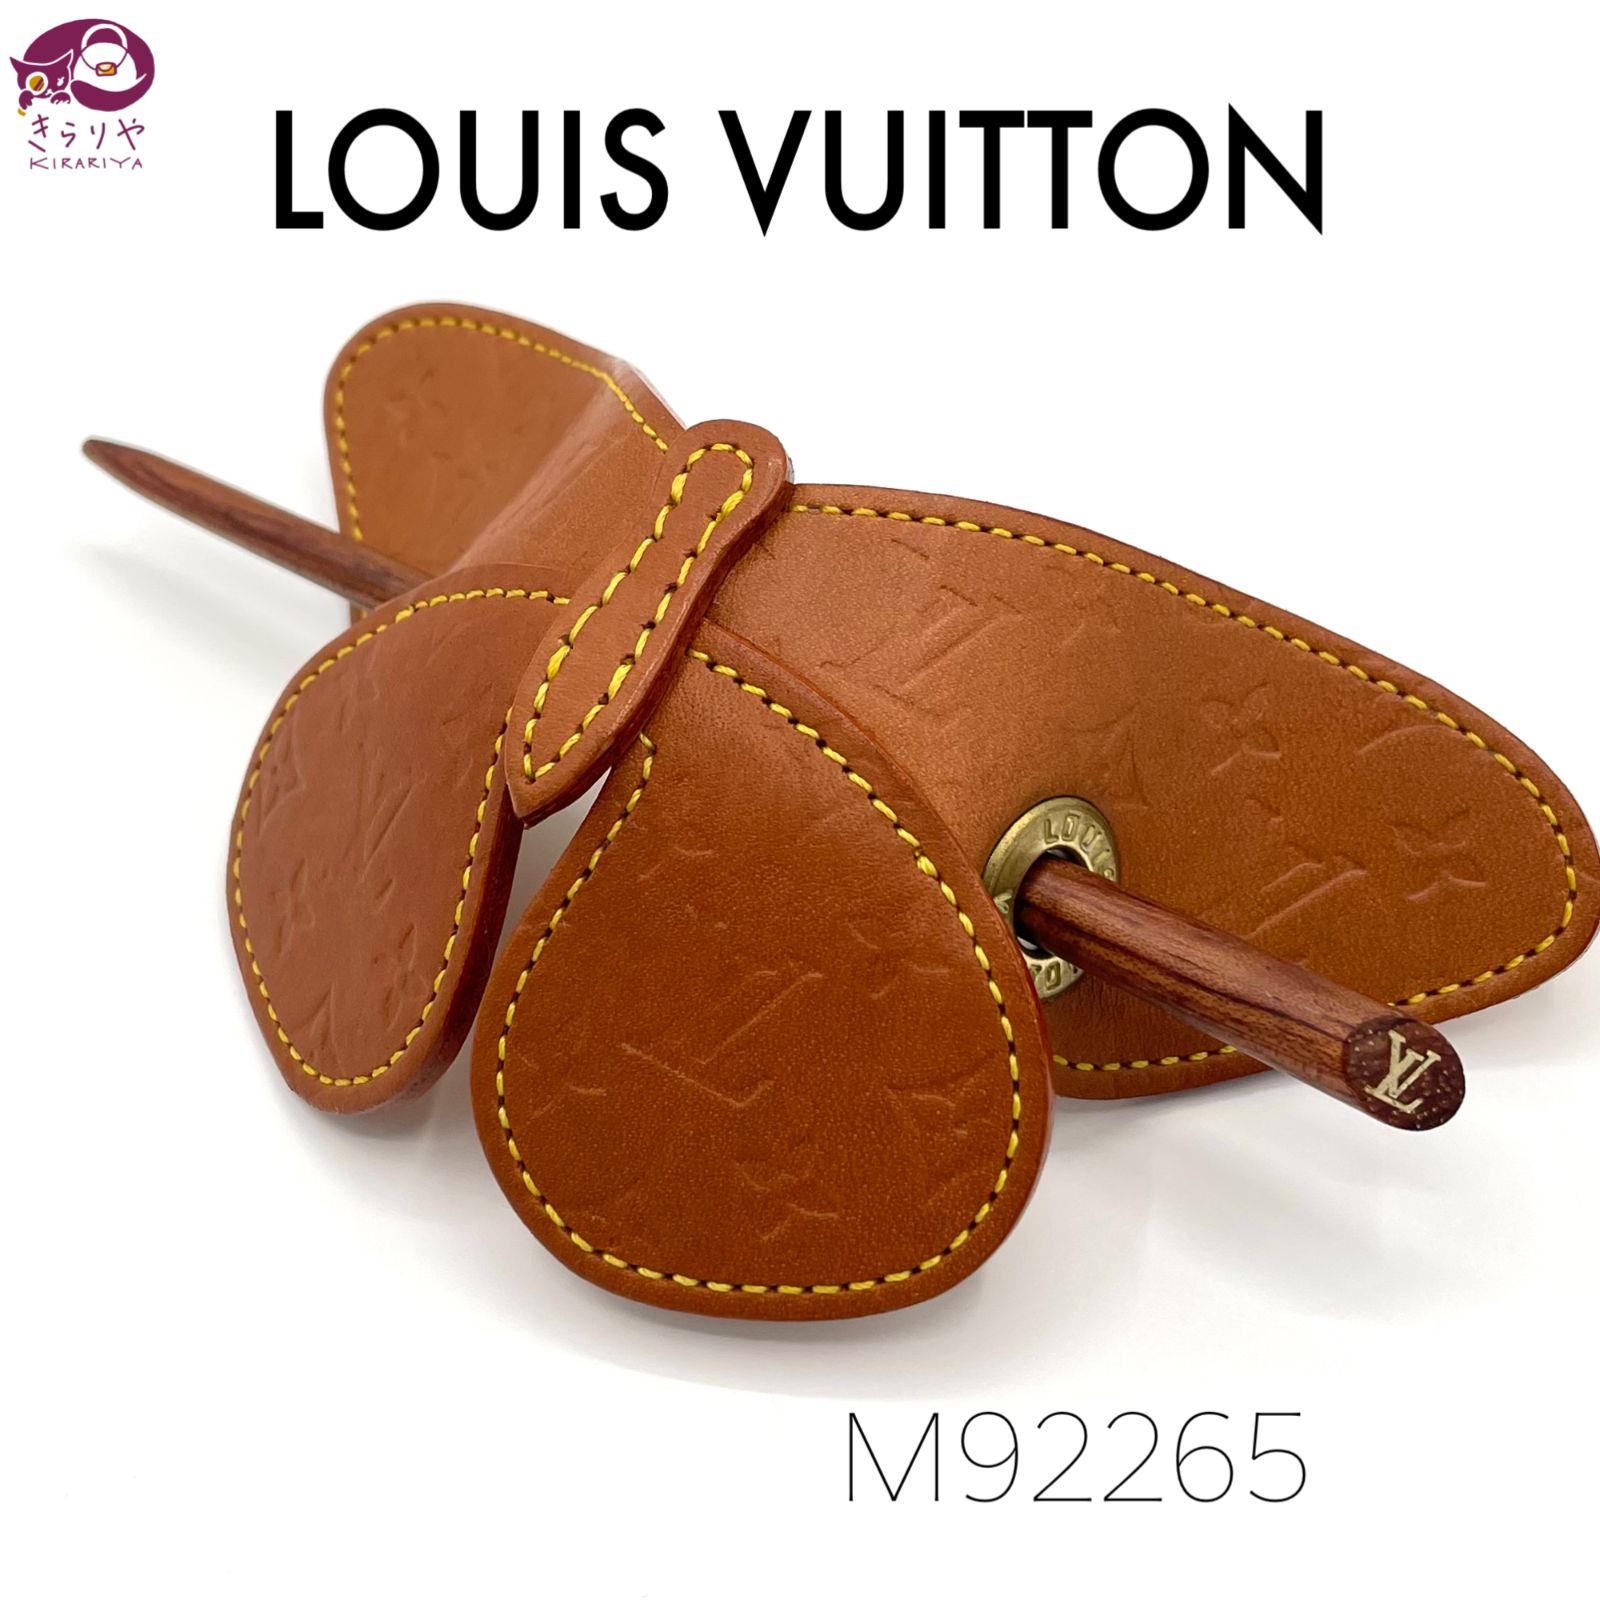 LOUIS VUITTON ルイヴィトン M92265 コントドゥ フェ バタフライ 